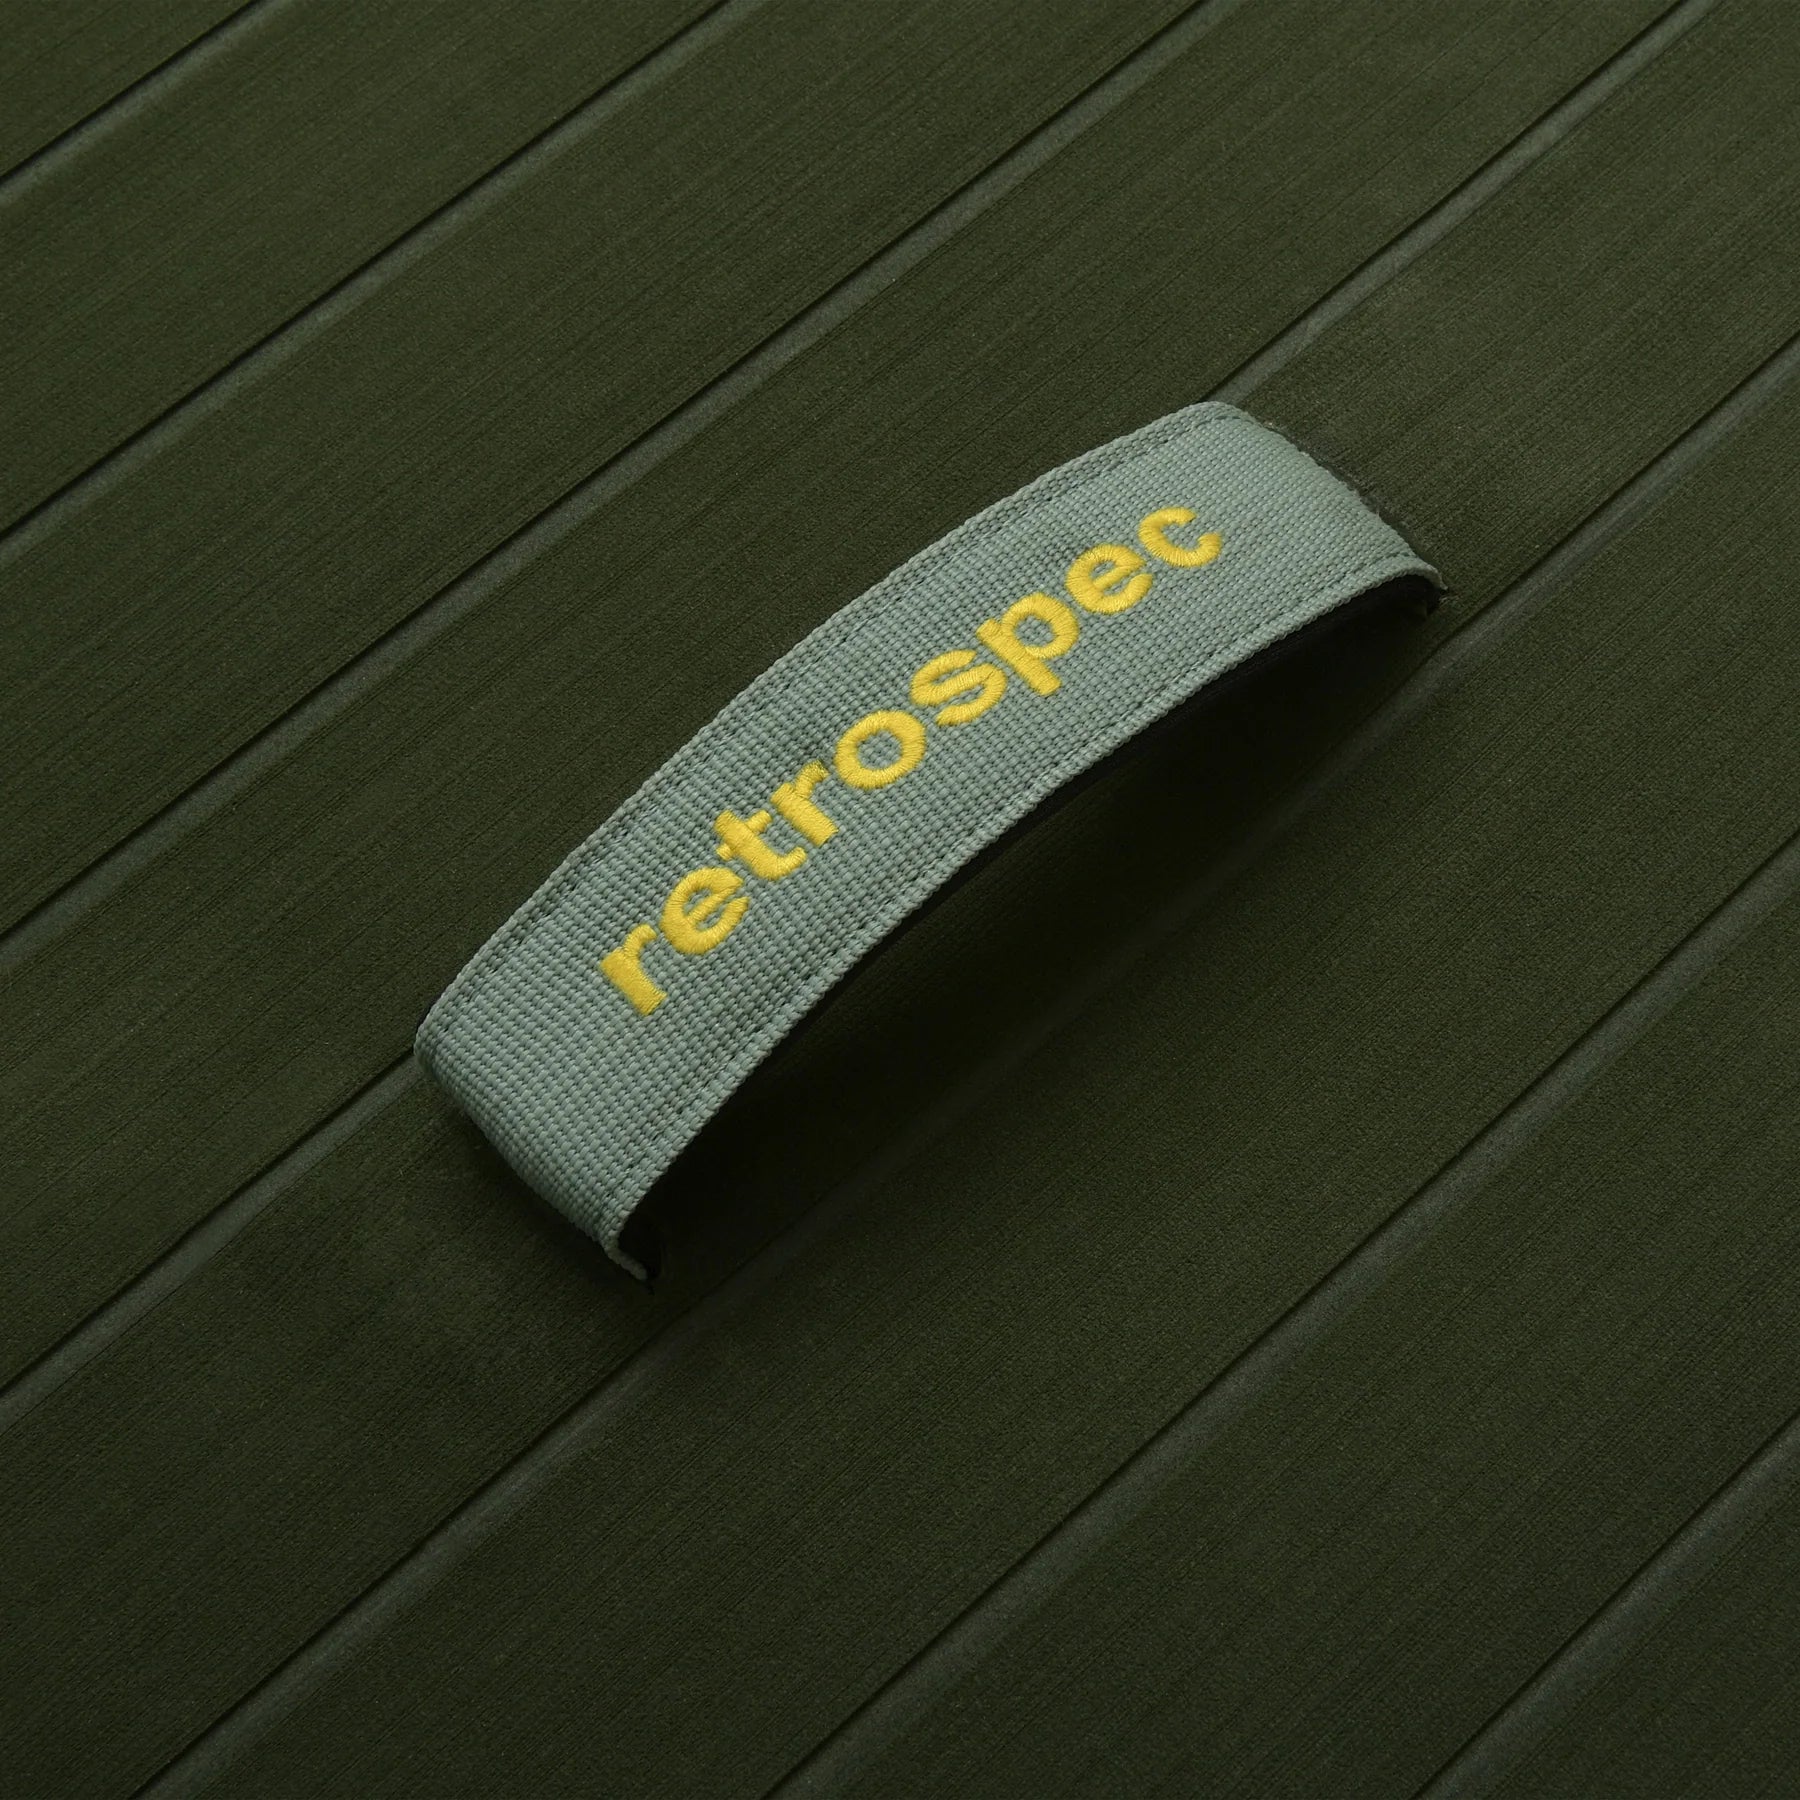 RETROSPEC - The Weekender 2 10'6